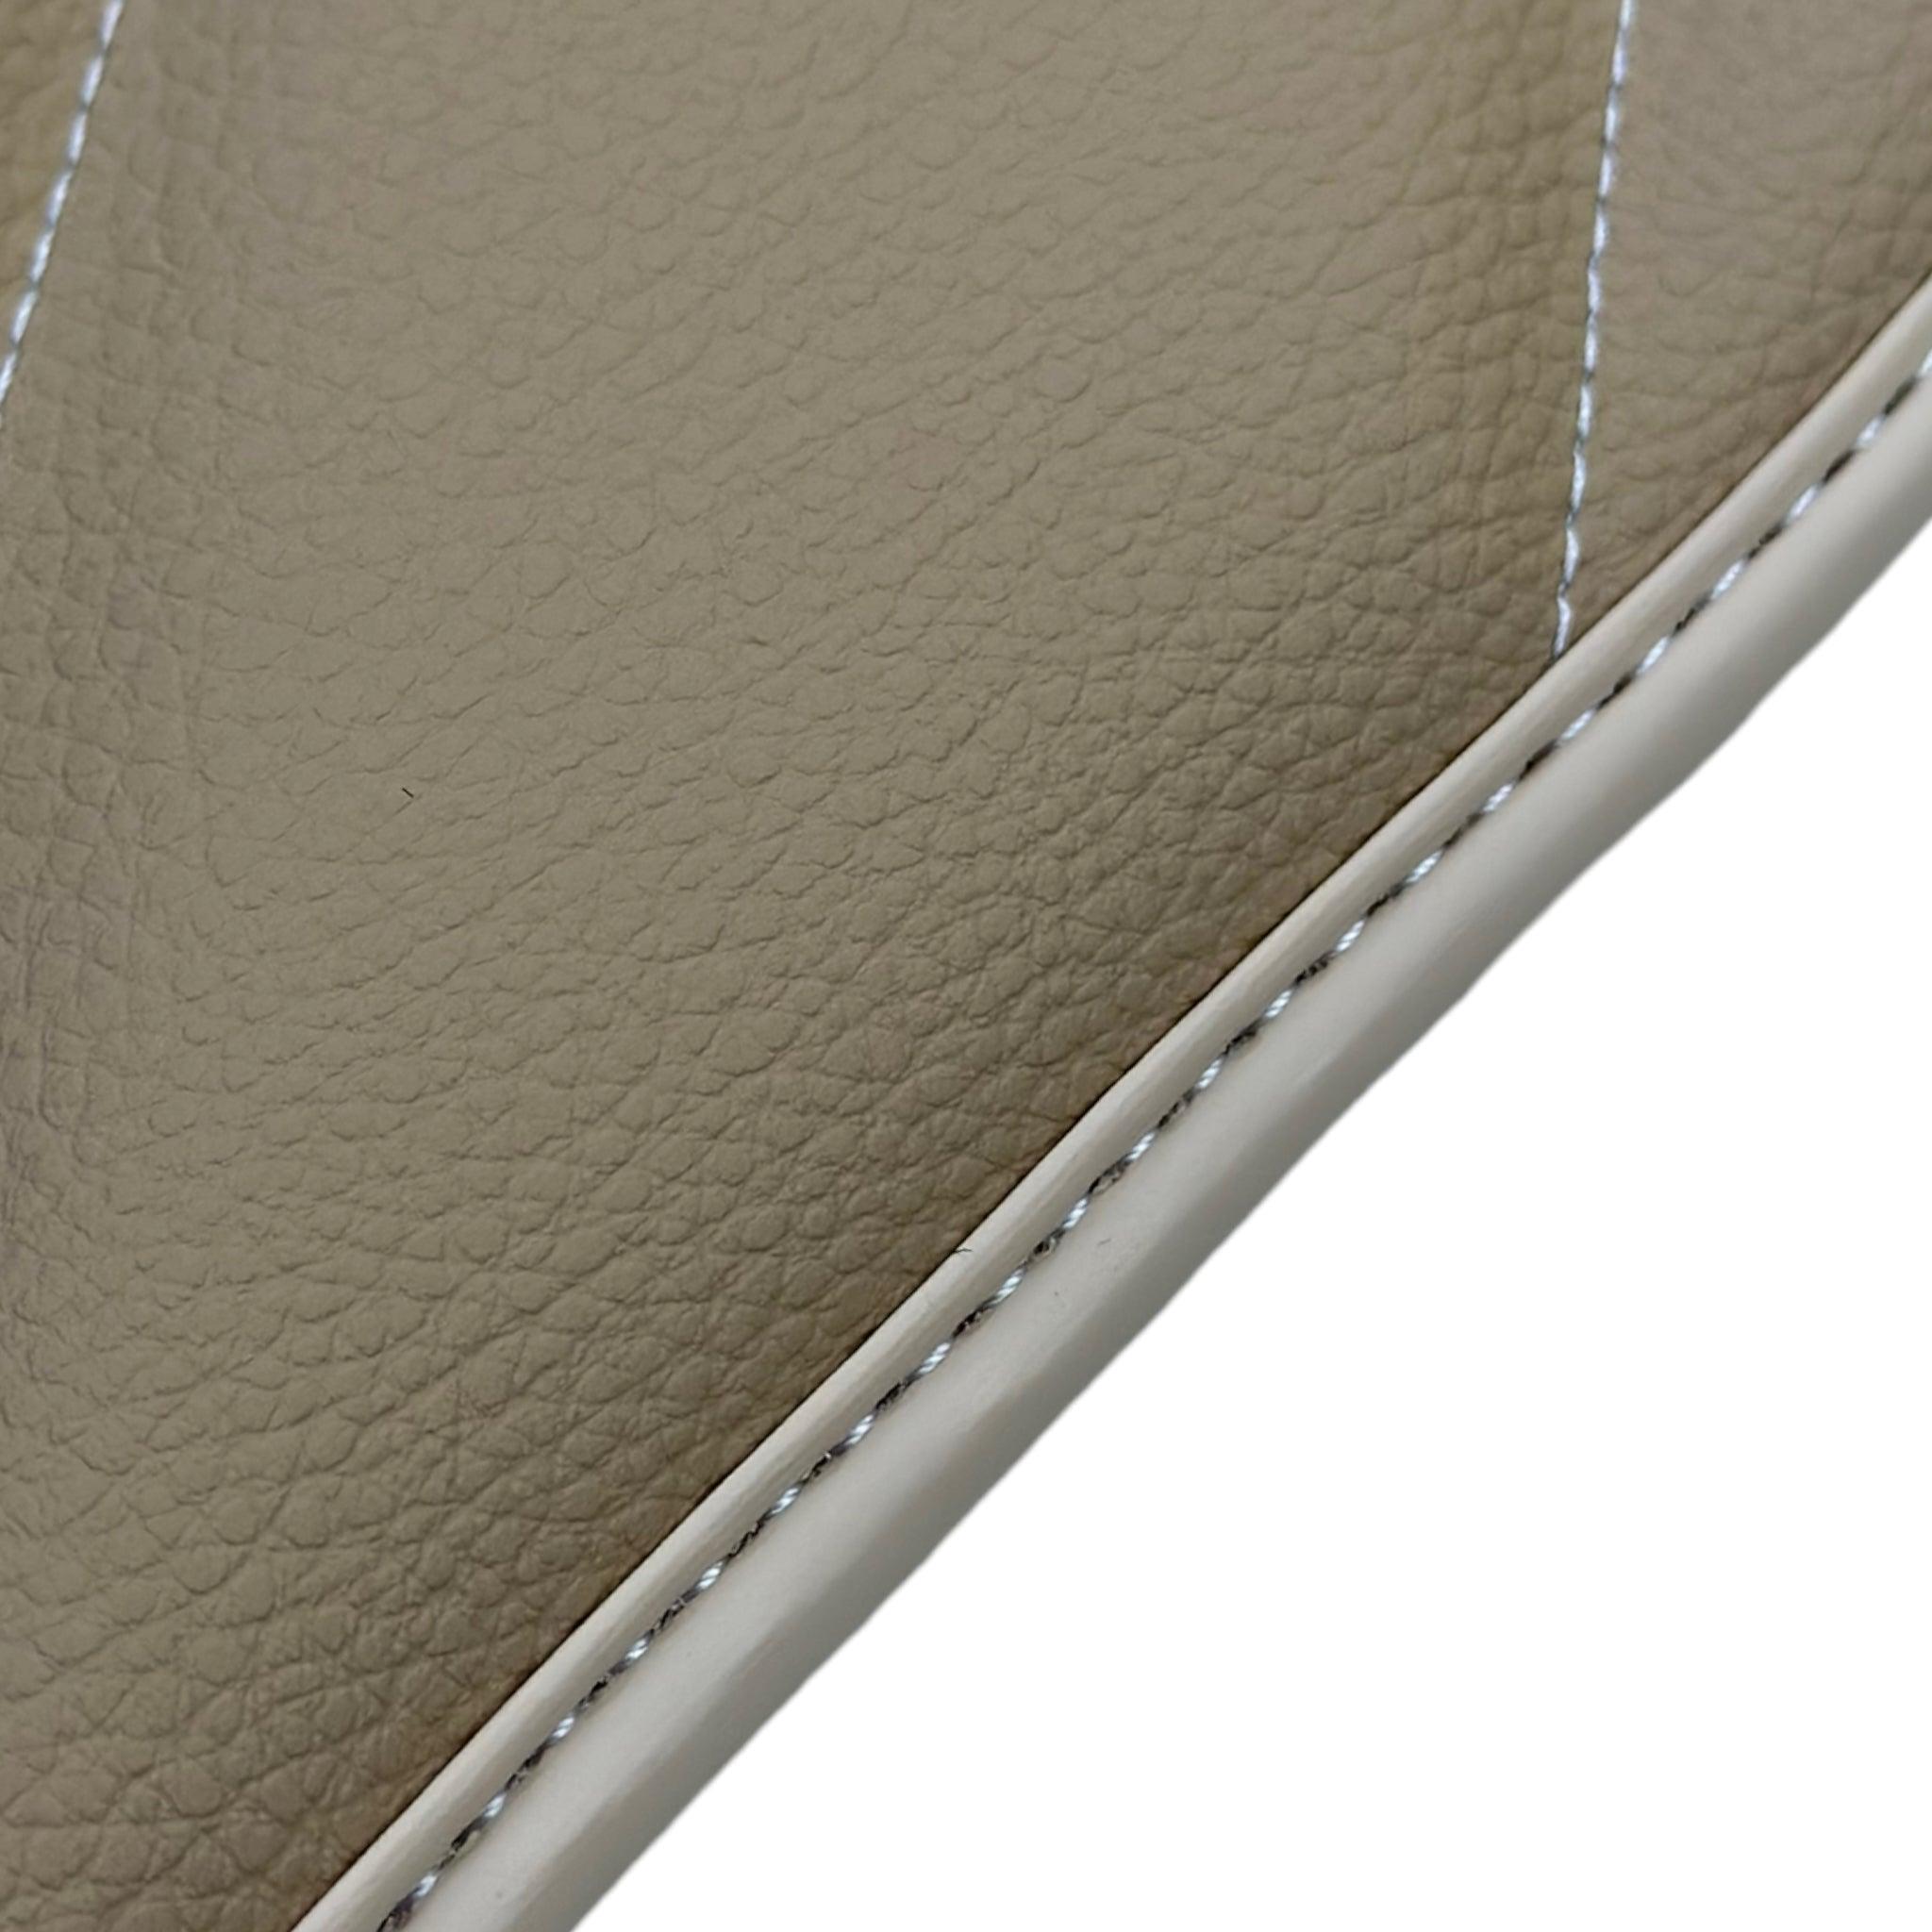 Beige Leather Floor Mats For Mercedes Benz E-Class S213 All Terrain (2017-2020)